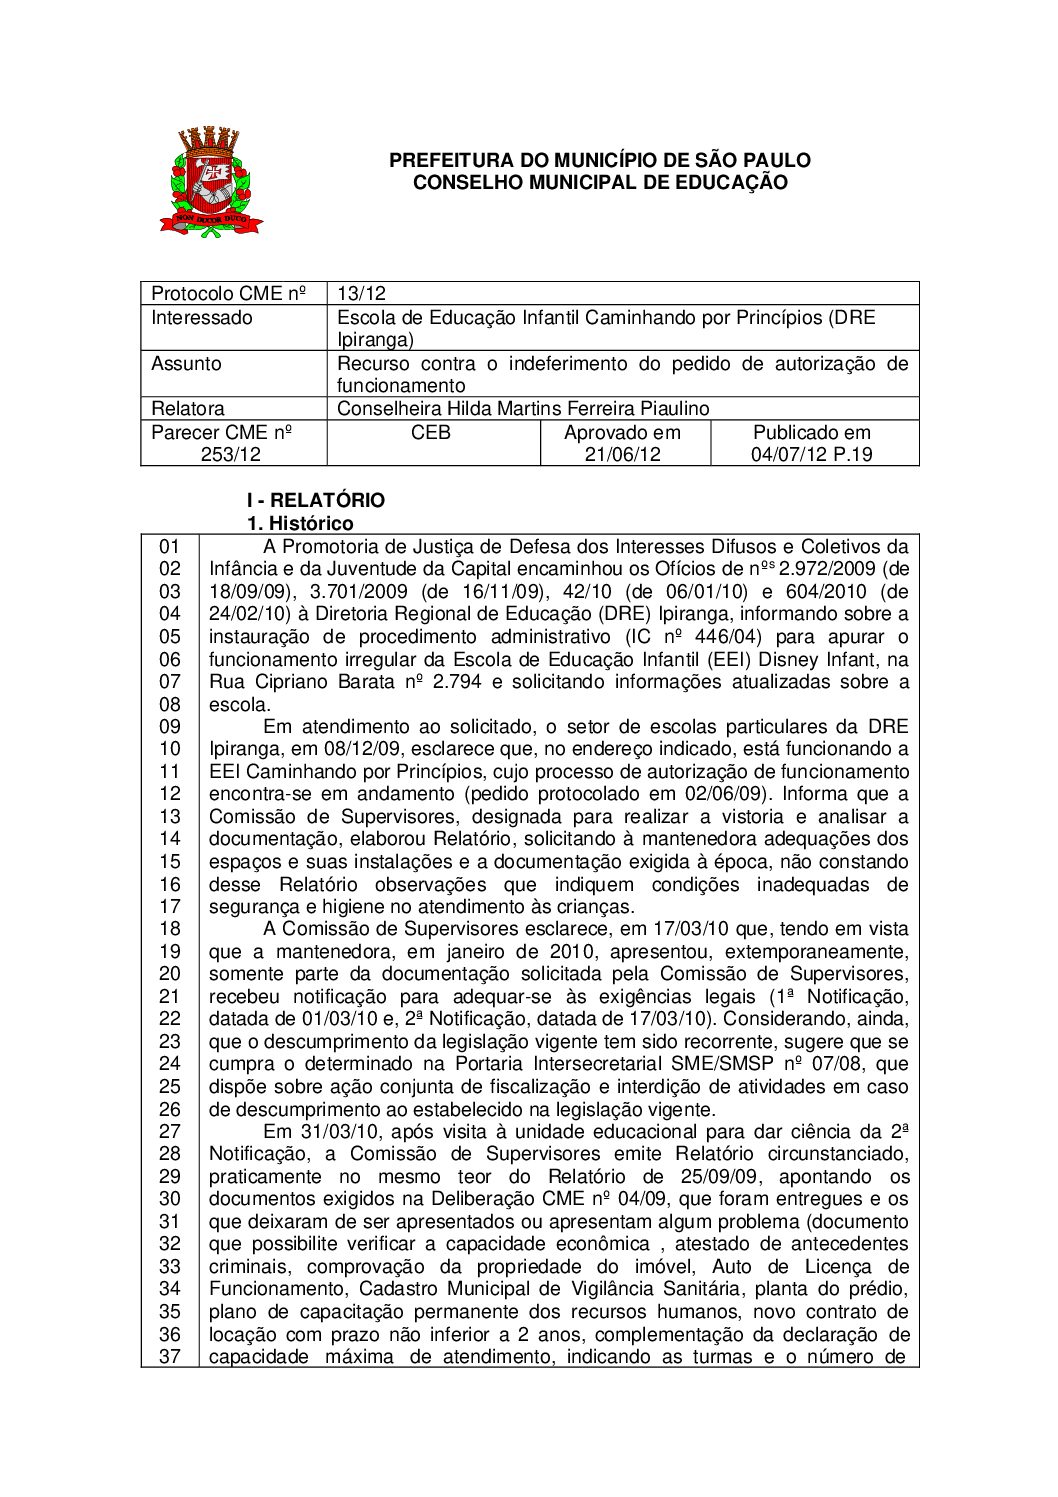 Parecer CME nº 253/2012 - Escola de Educação Infantil Caminhando por Princípios (DRE Ipiranga) - Recurso contra o indeferimento do pedido de autorização de funcionamento 